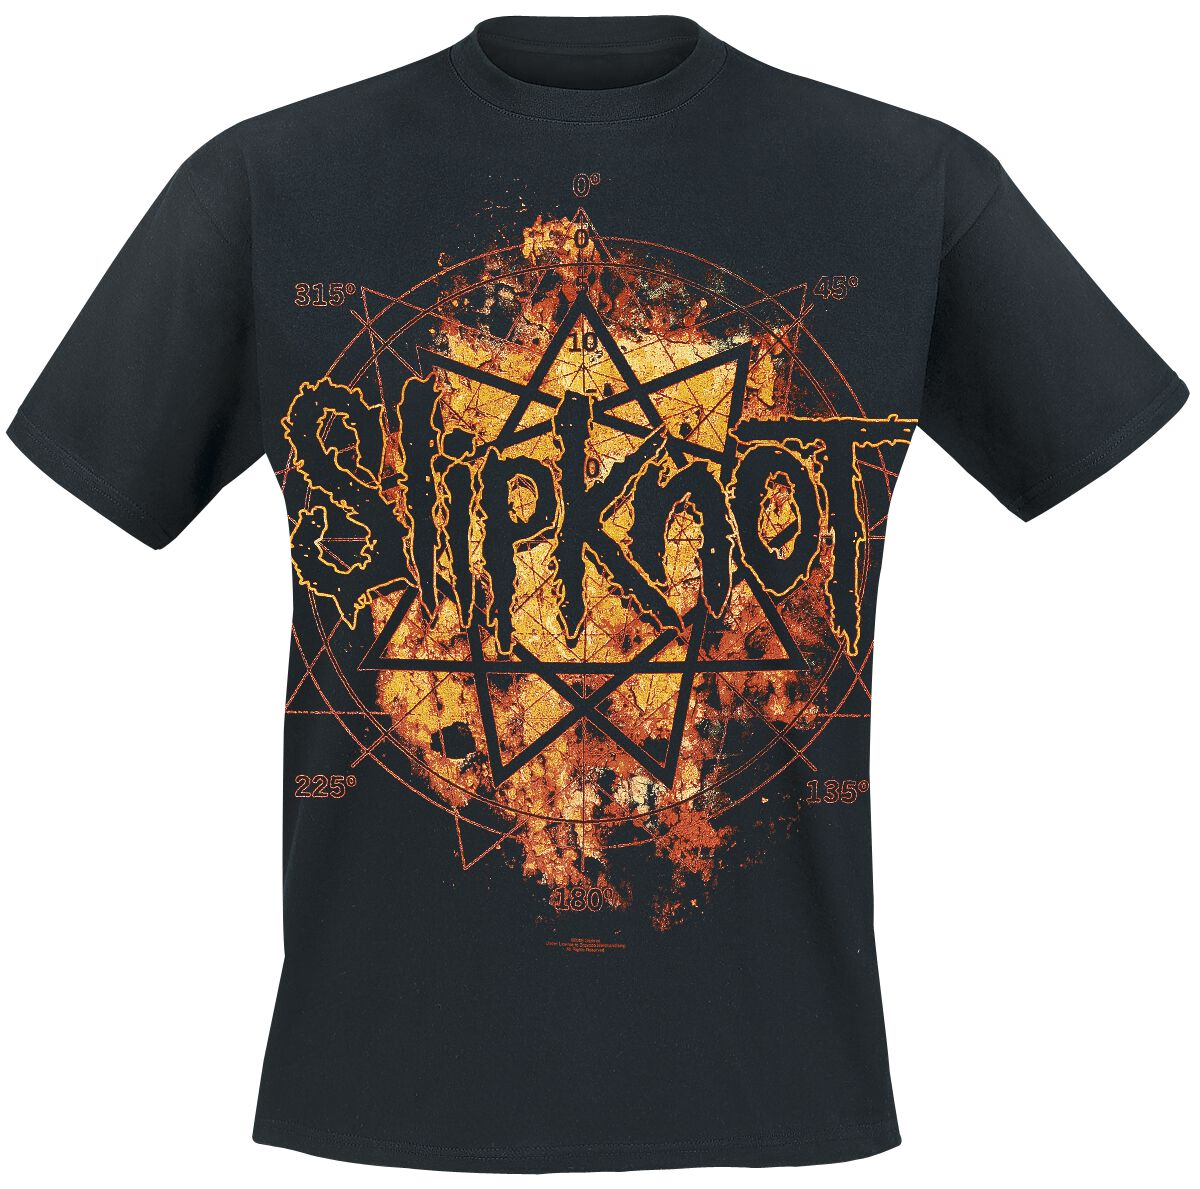 Slipknot T-Shirt - Radio Fires - S bis XXL - für Männer - Größe XXL - schwarz  - Lizenziertes Merchandise!